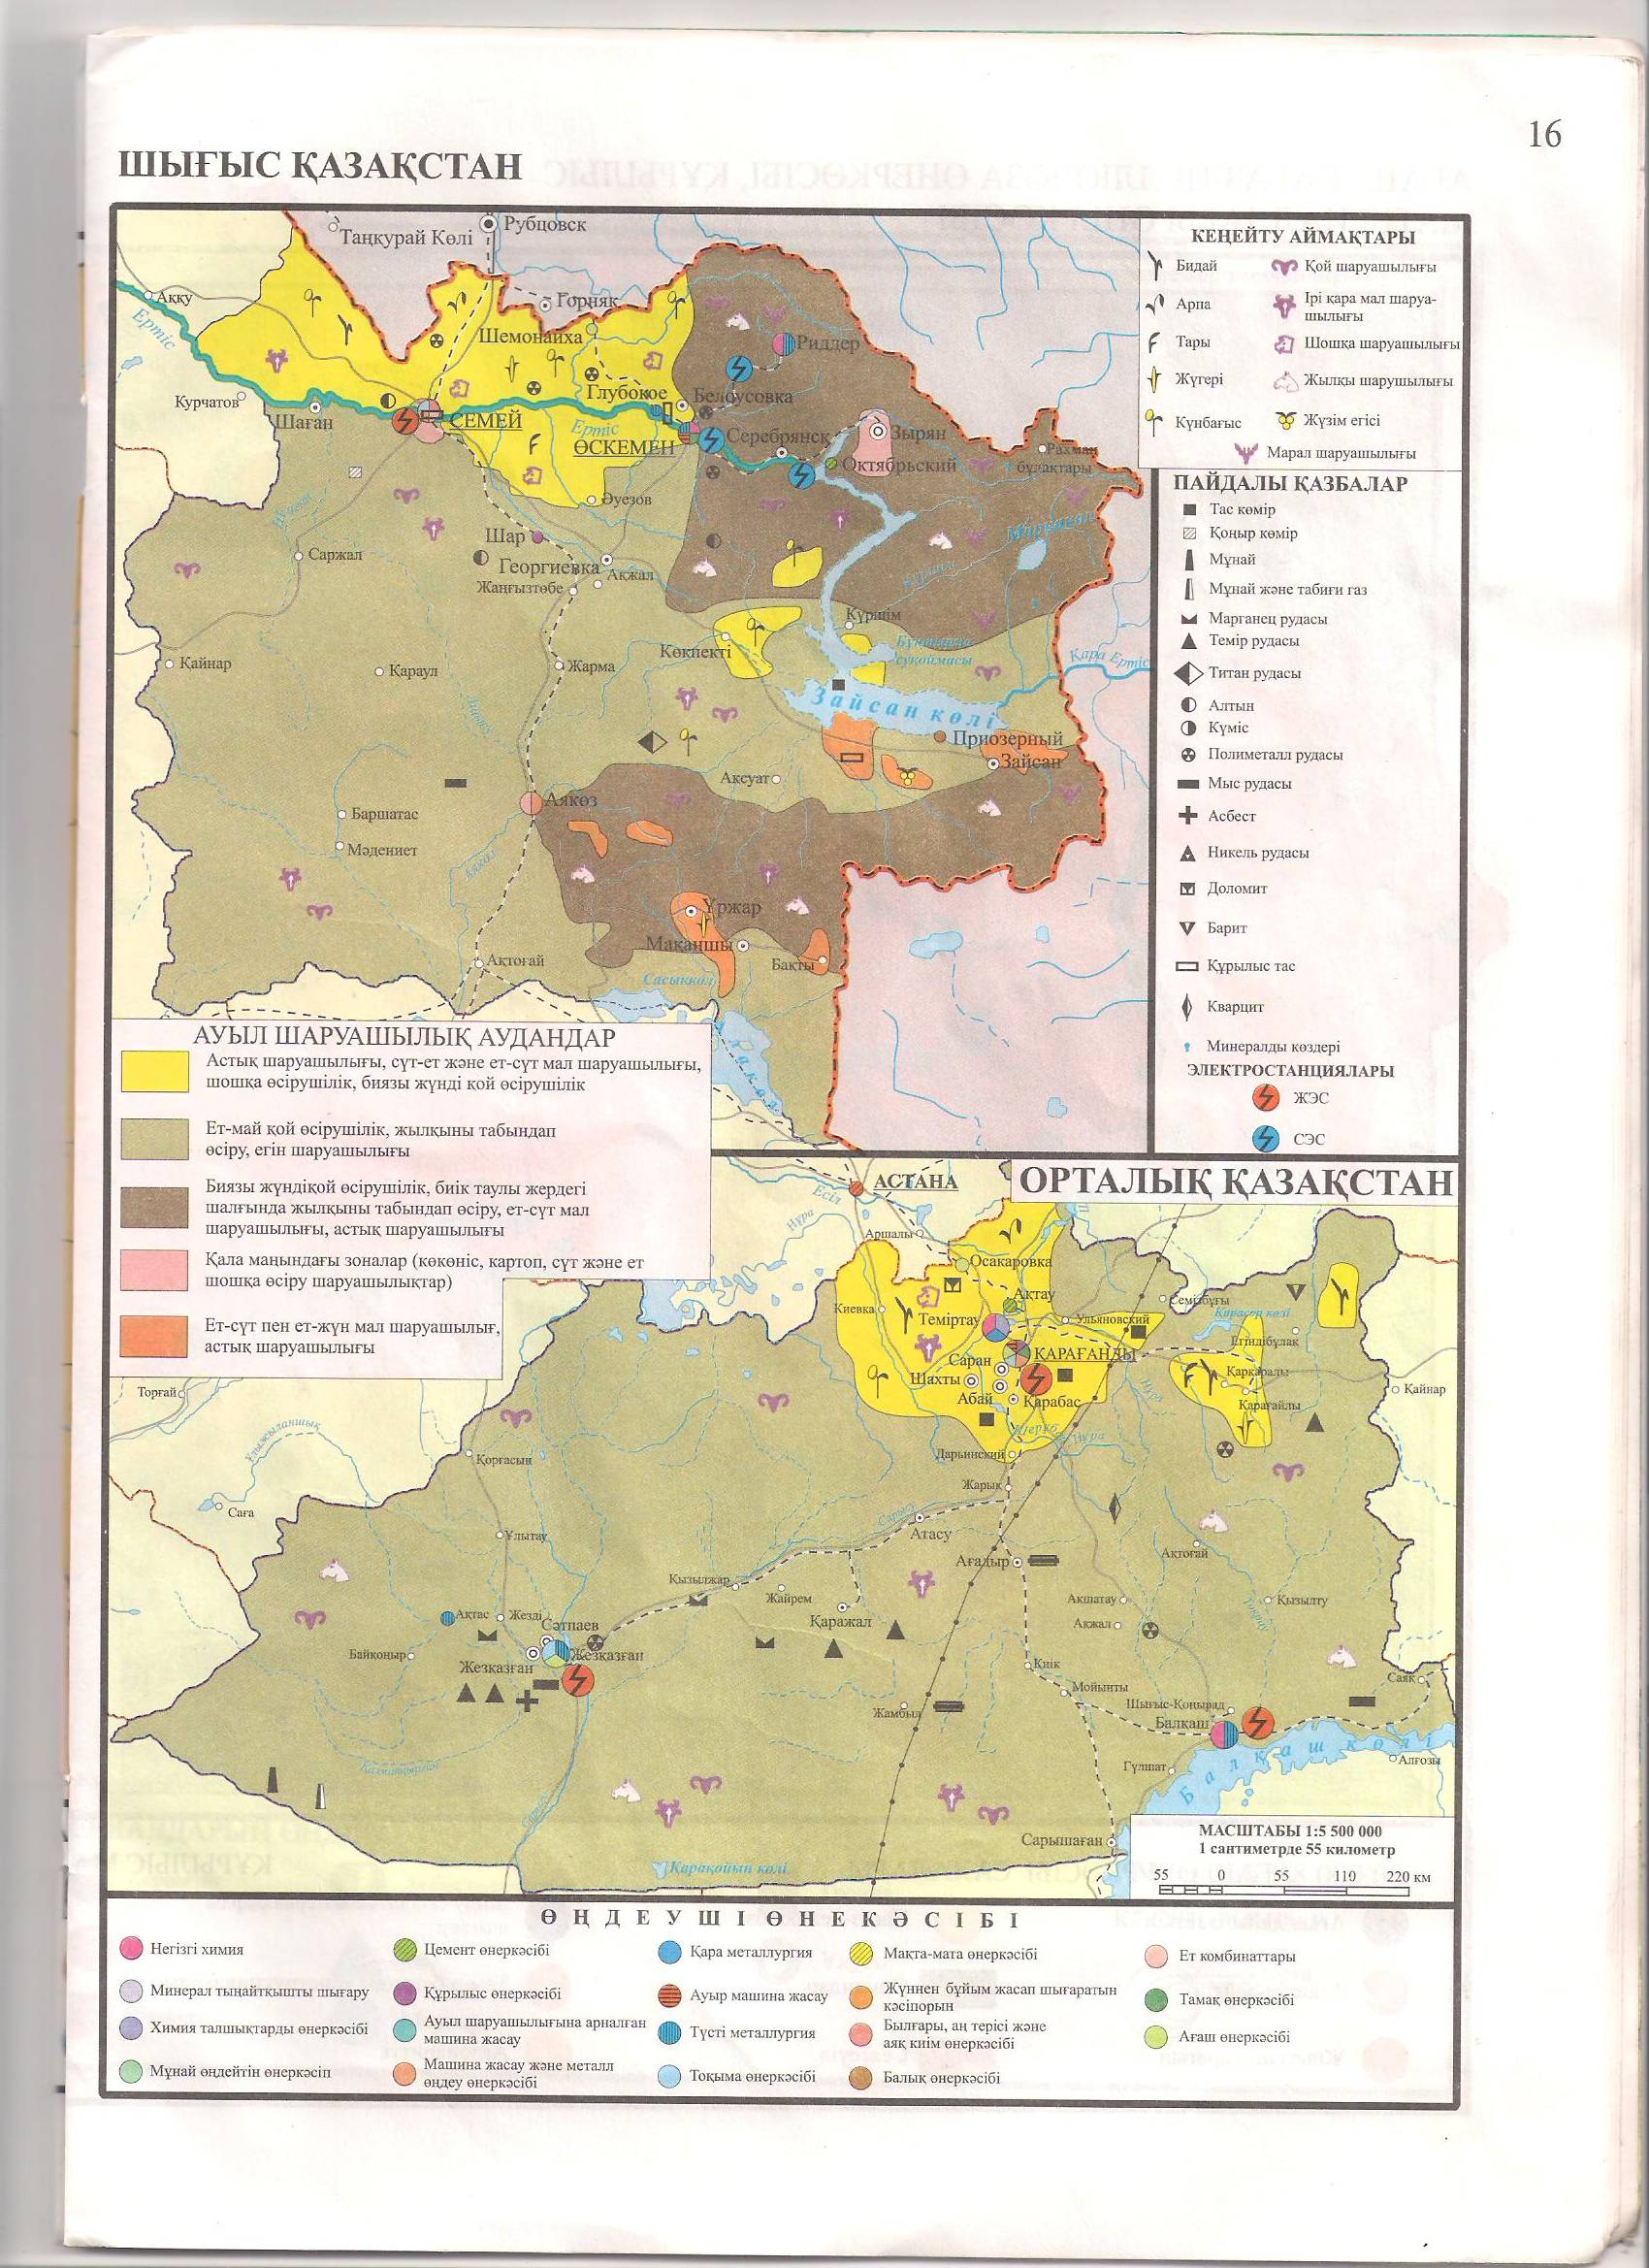 Орталық Қазақстанның экономикалық-географиялық жағдайы,табиғат жағдайлары,ресурстары,халқы.